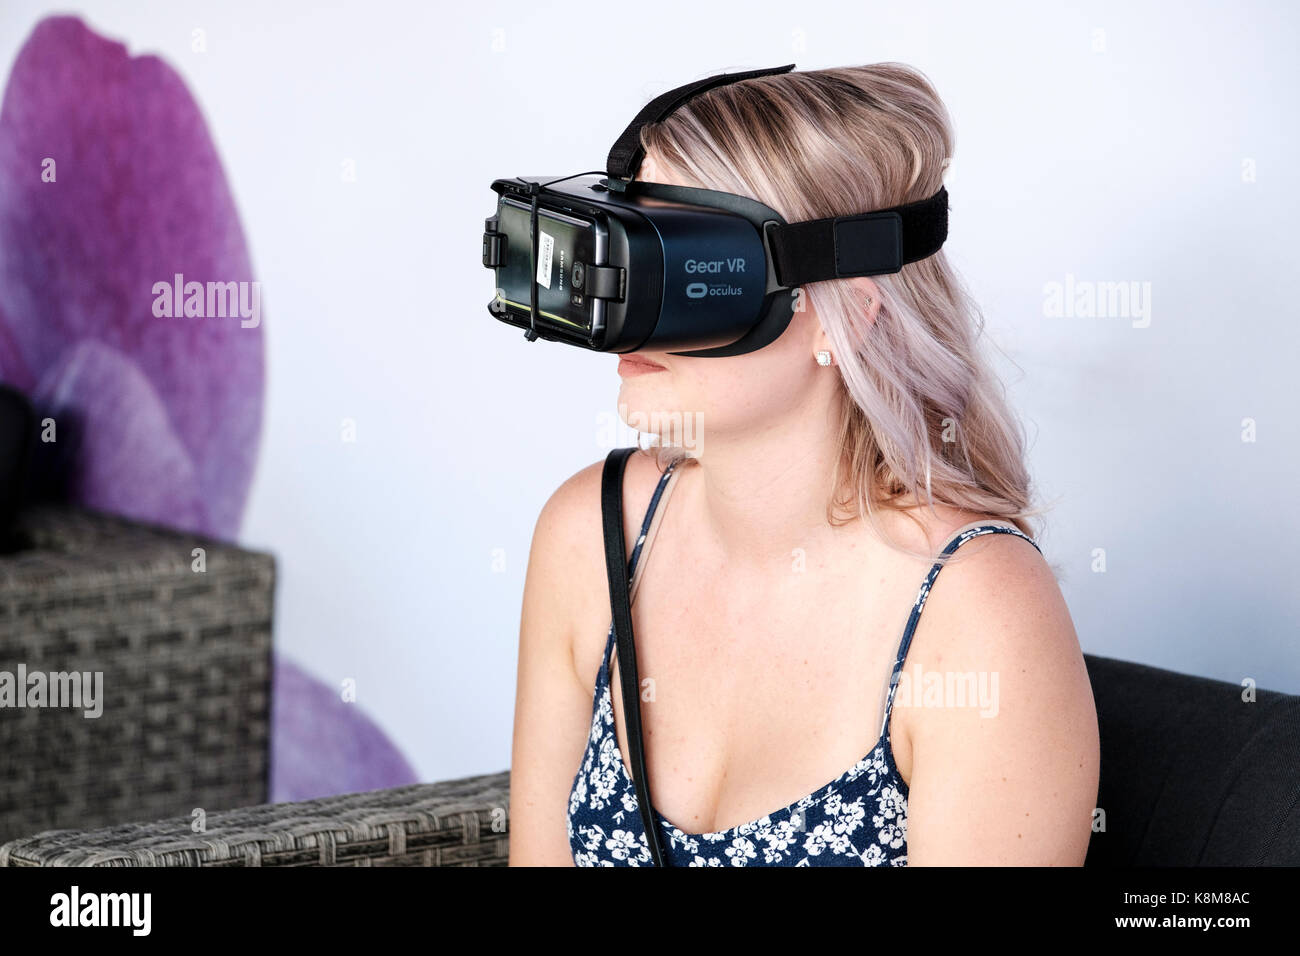 Adolescent girl wearing Oculus VR, casque de réalité virtuelle (RV) avec équipement téléphone Samsung. Banque D'Images